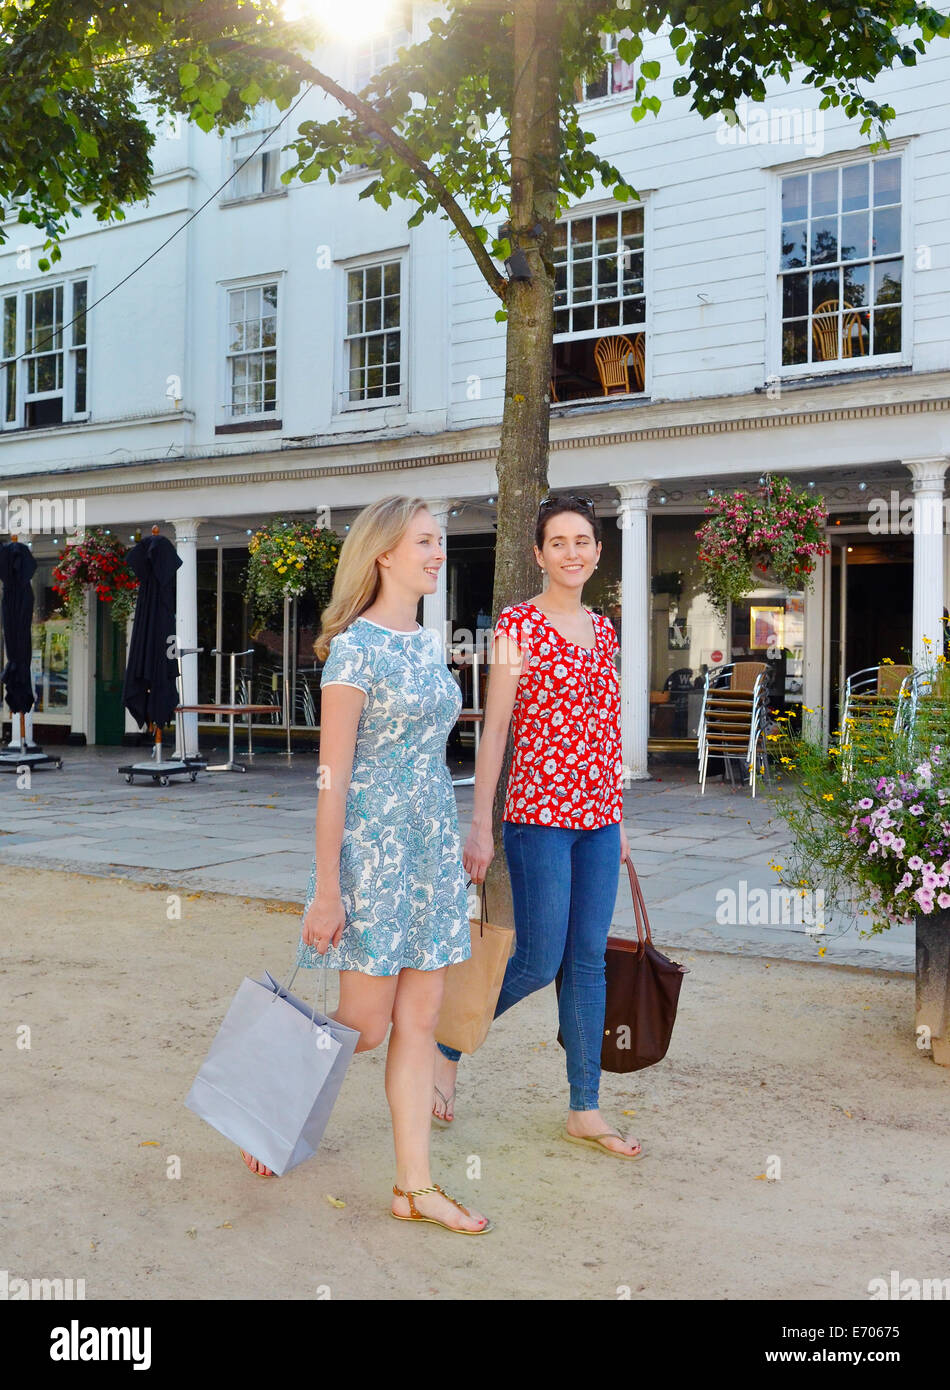 Zwei junge Frauen, die ein Spaziergang entlang der Straße Einkaufstaschen tragen Stockfoto